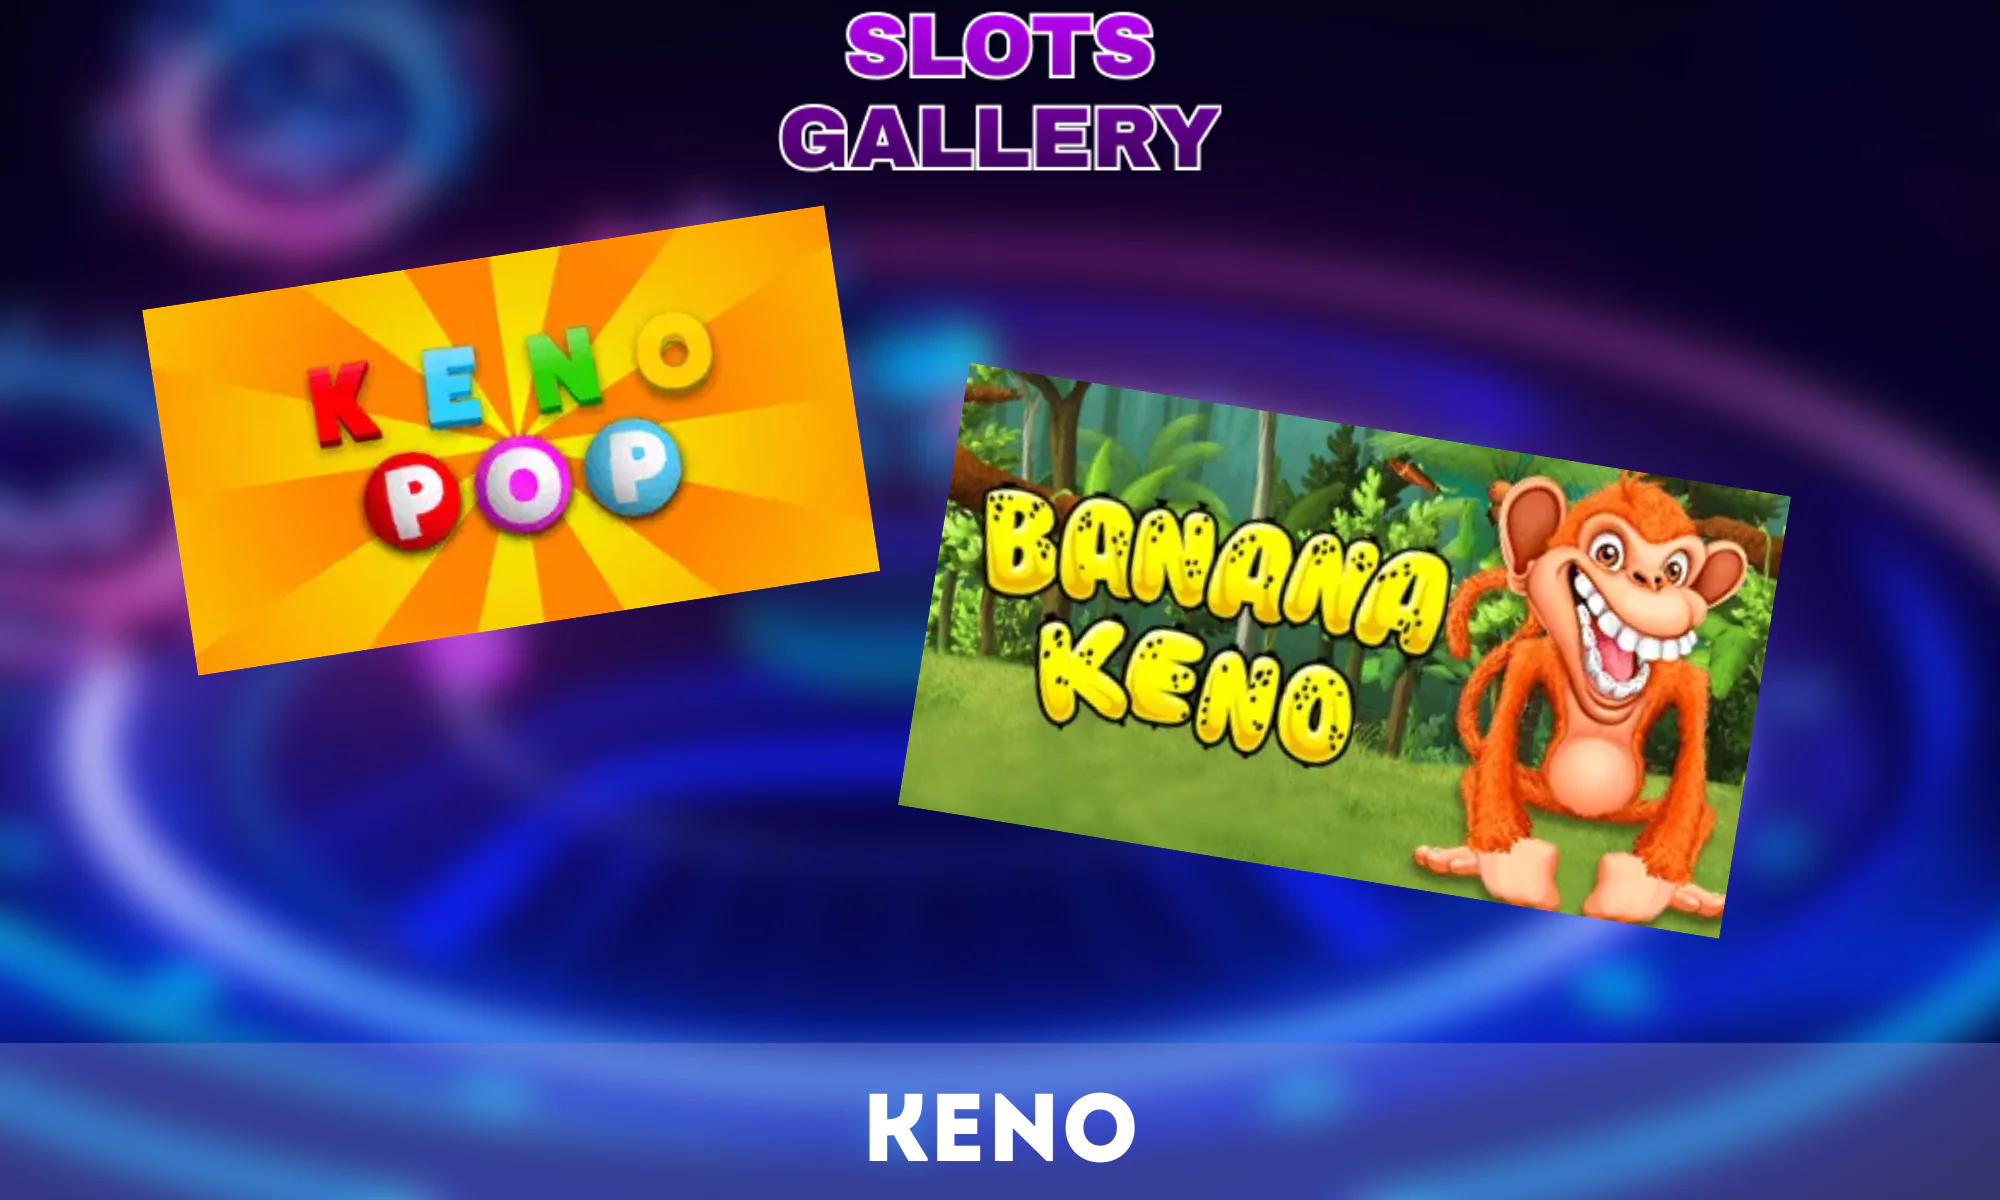 Le Keno est un jeu de loterie classique disponible dans la Galerie des machines à sous.